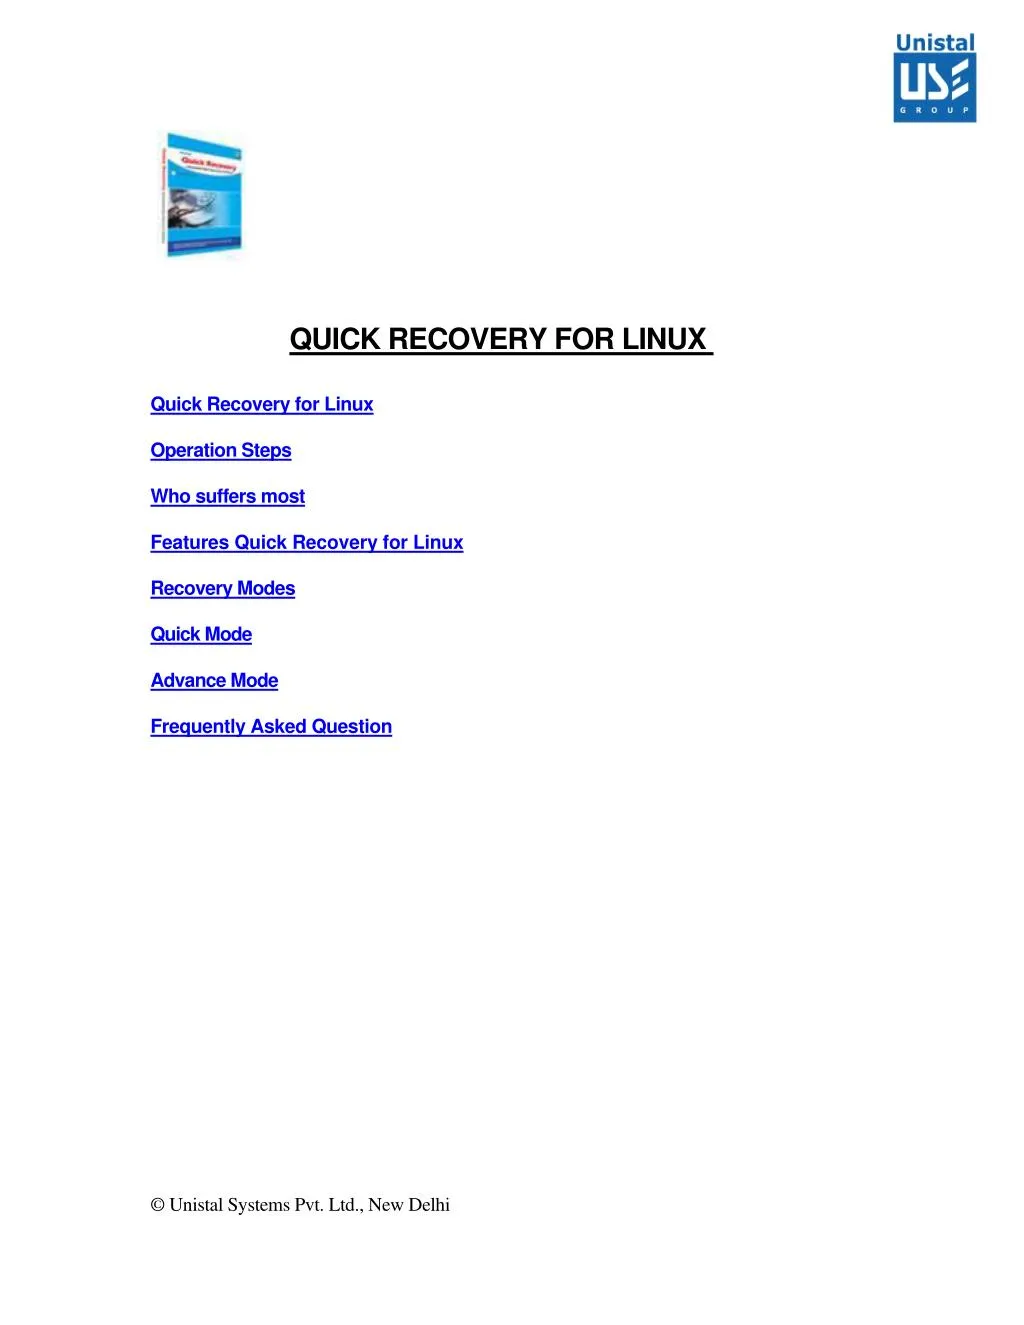 quick recovery for linux quick recovery for linux